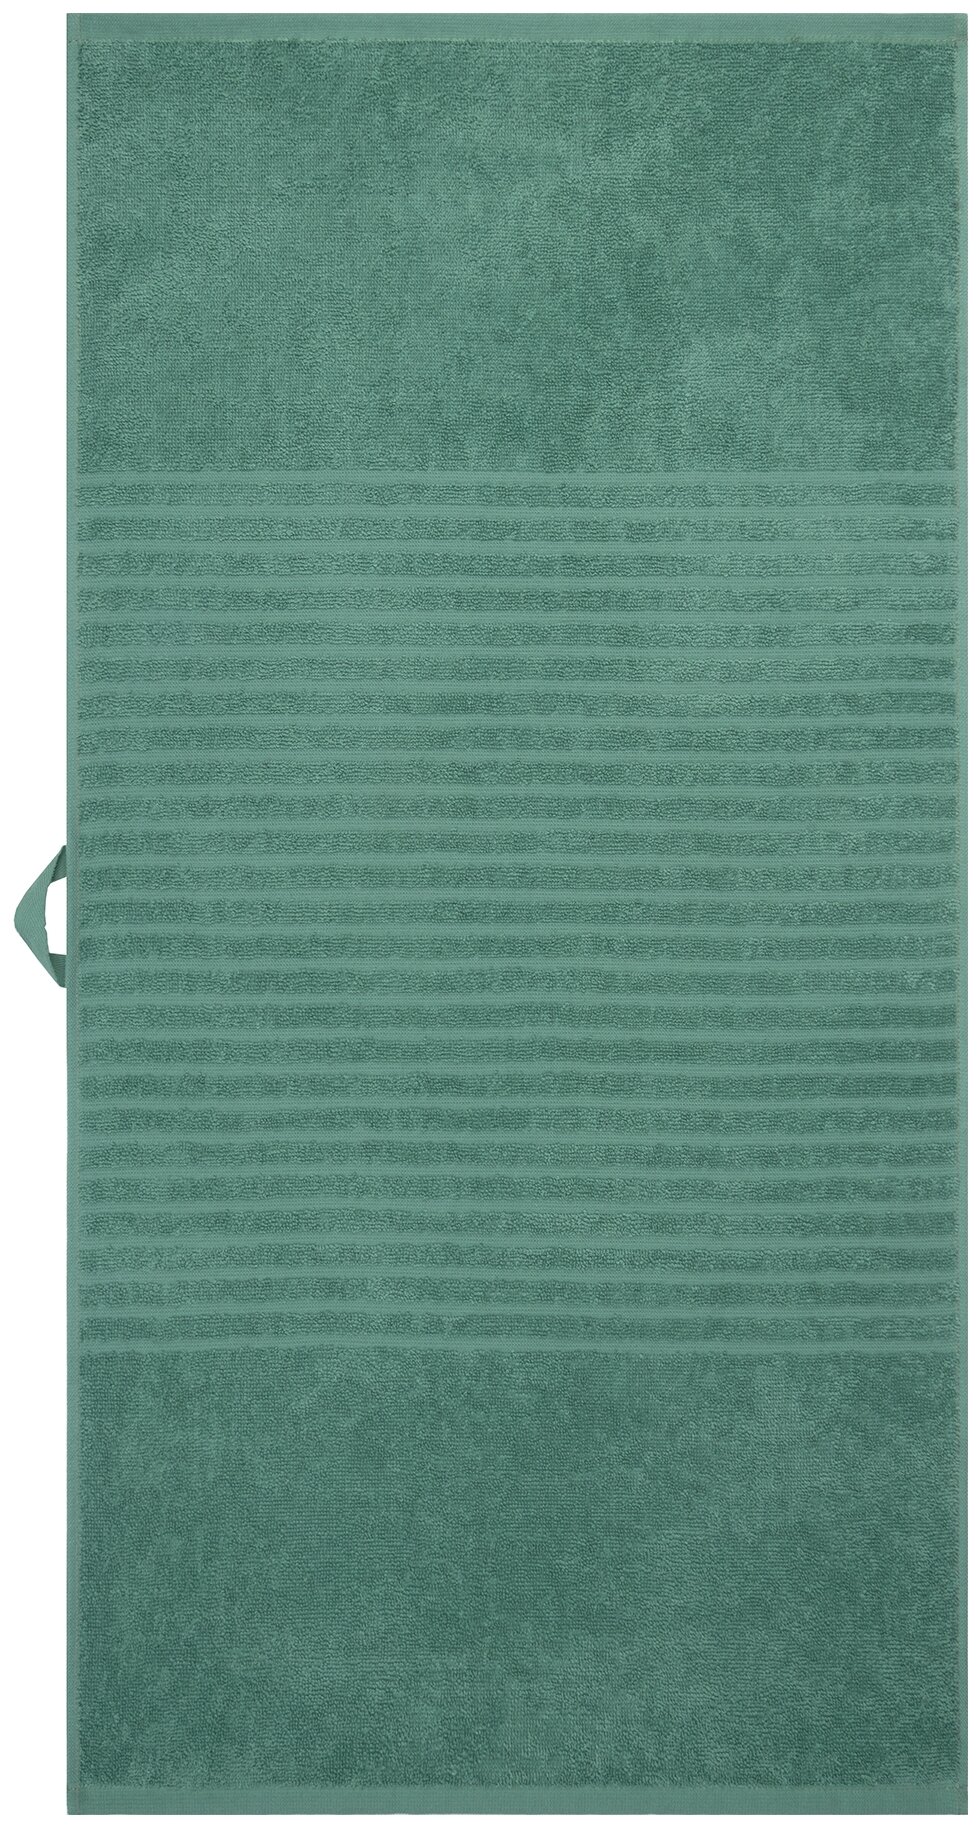 Полотенце махровое для лица и рук, Донецкая мануфактура, 50Х100см, цвет:зеленая камея, 100% хлопок - фотография № 10